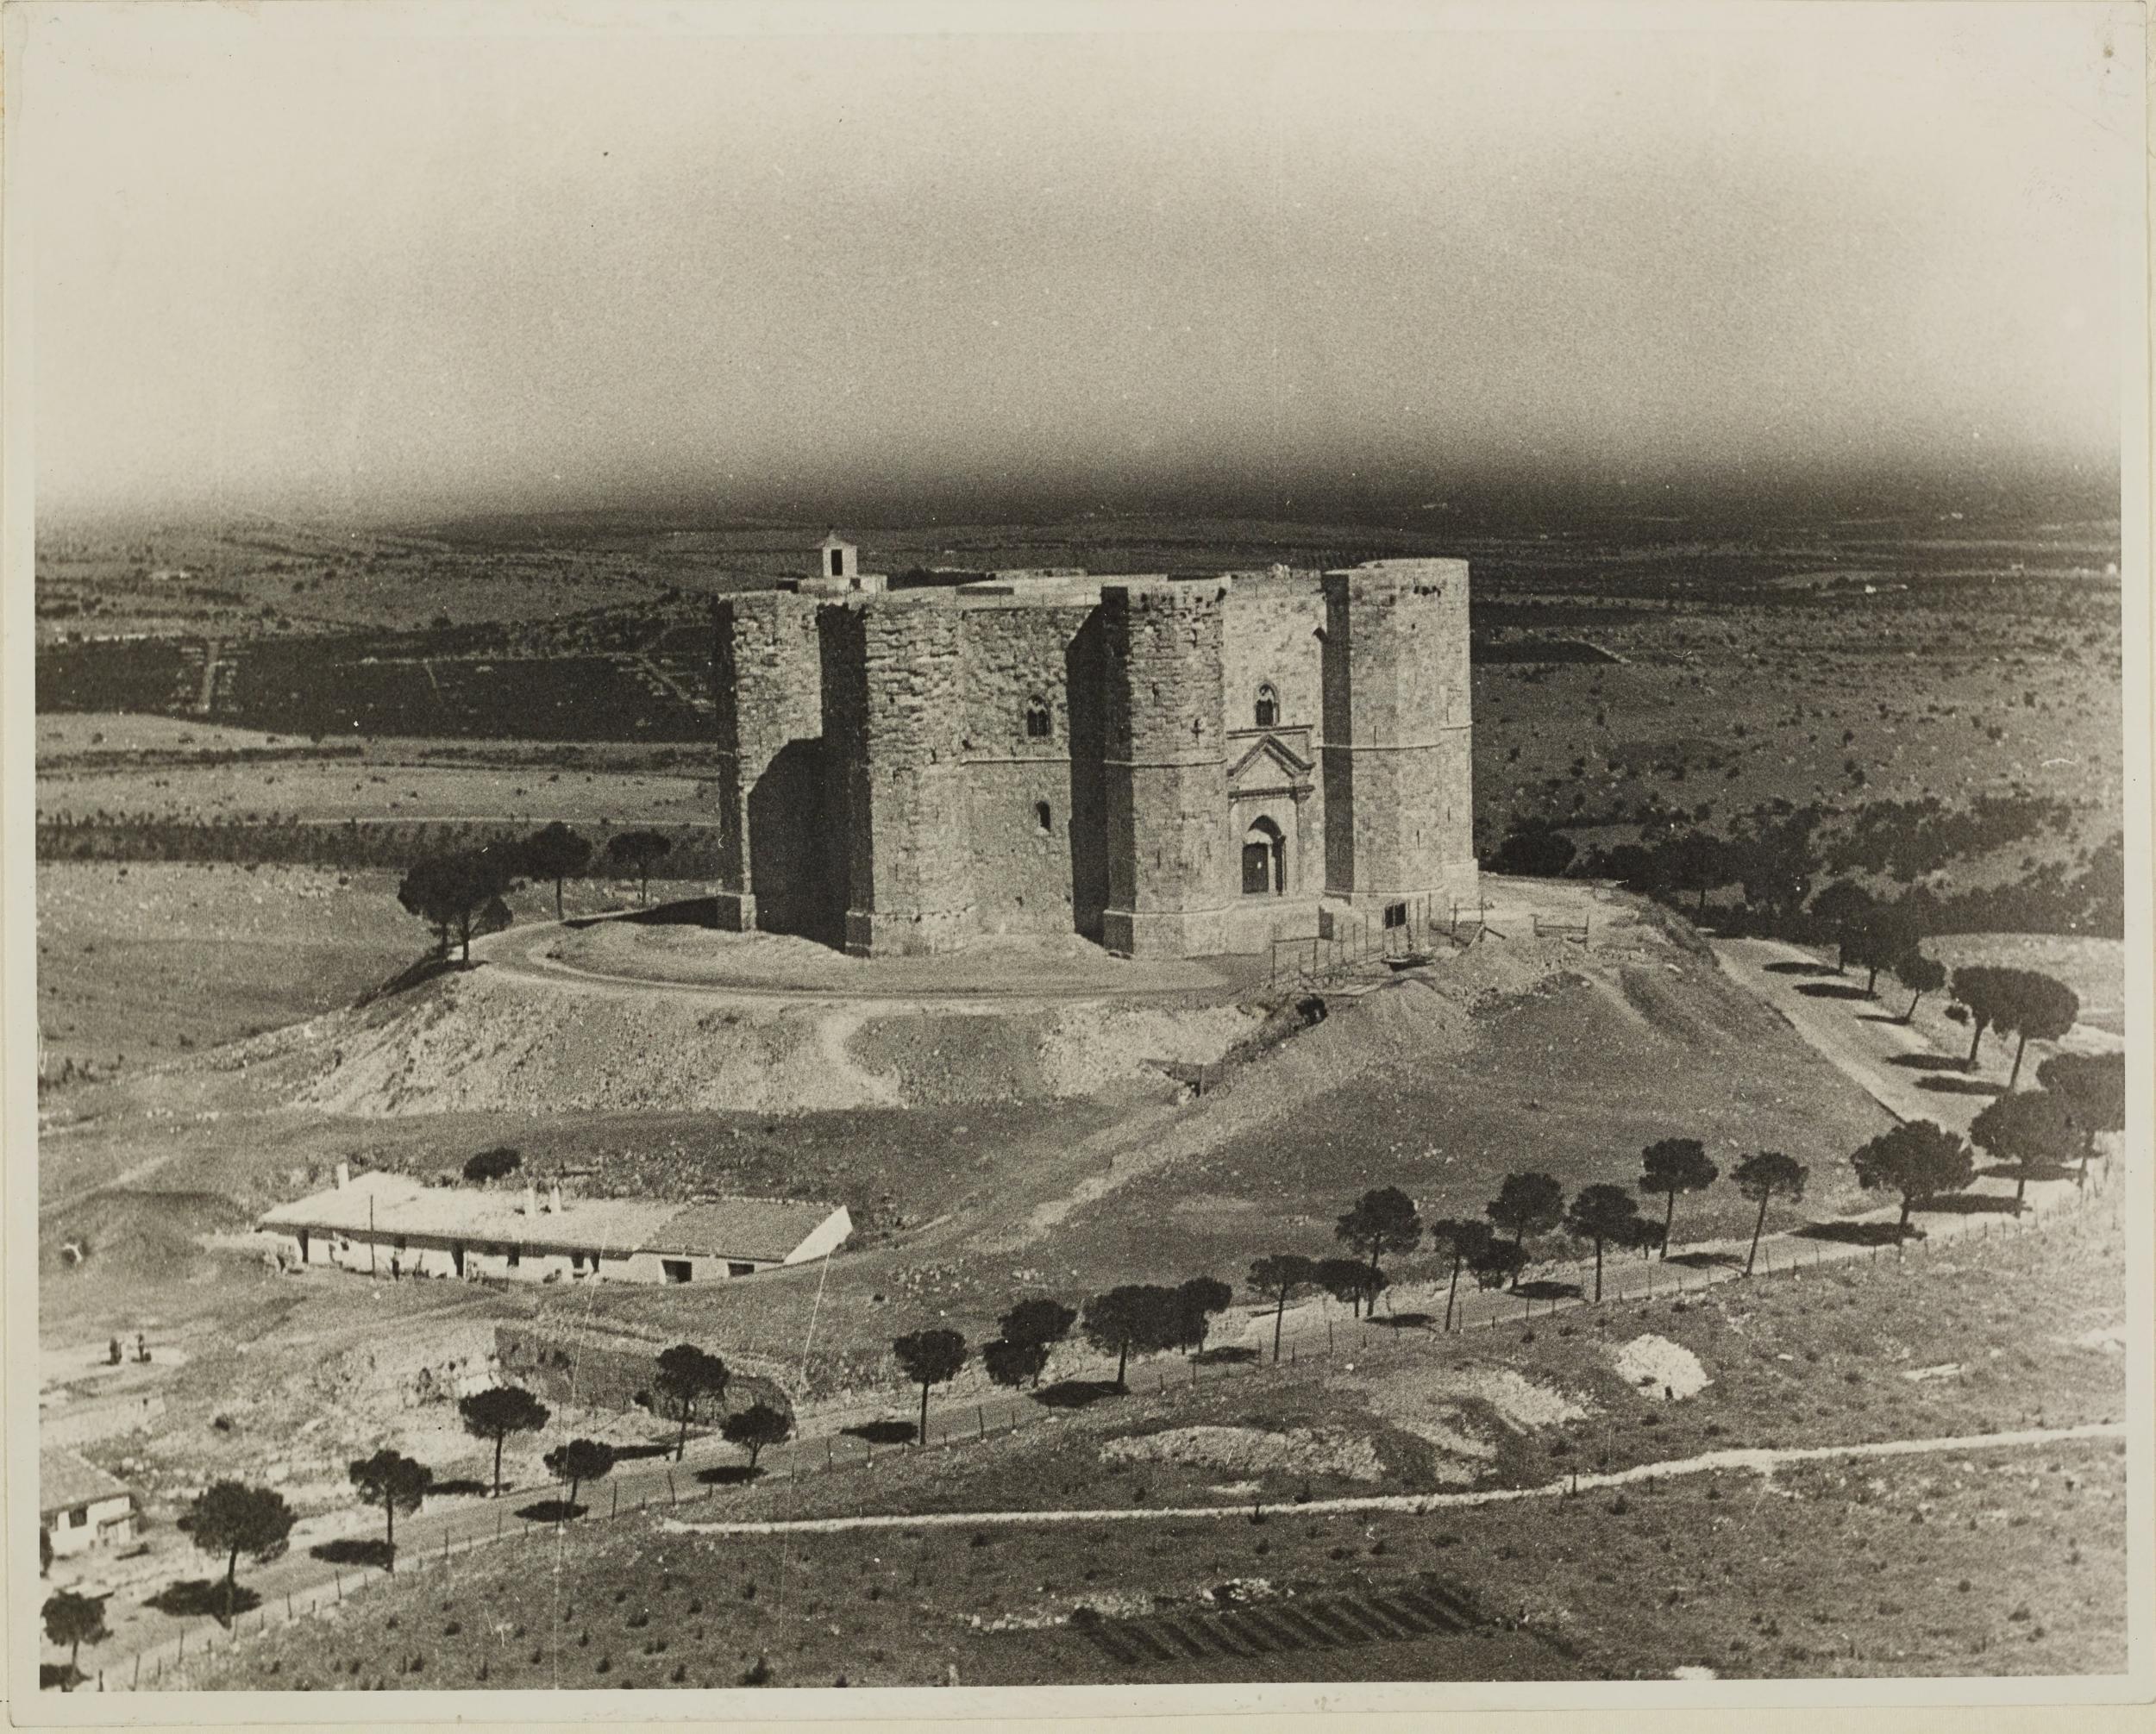 Fotografo non identificato, Andria, Castel del Monte - Veduta aerea del castello, 1951-2000, gelatina ai sali d'argento/carta, MPI131885